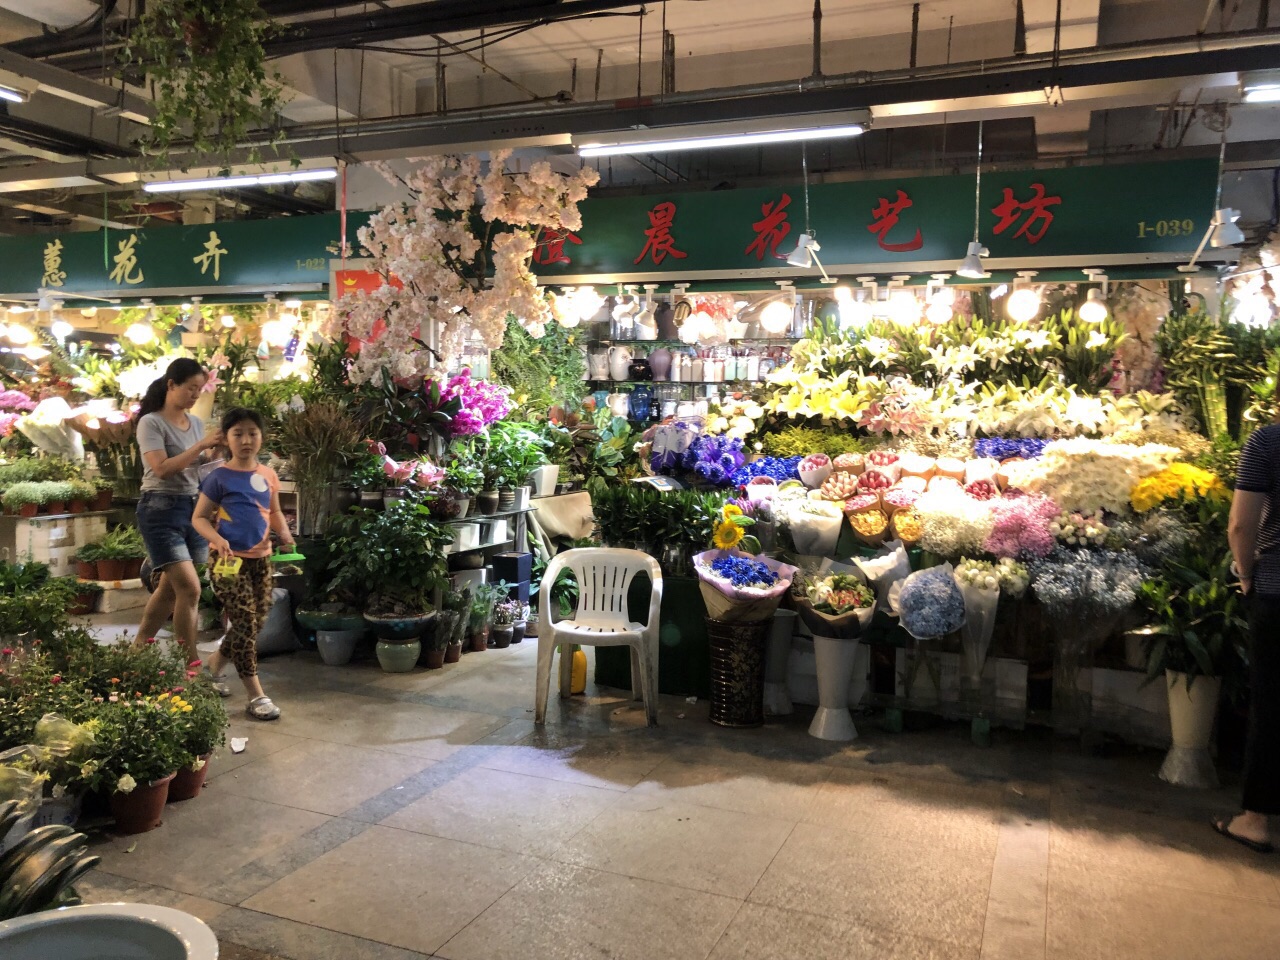 我们去的是吴山花鸟市场,一楼都是花市,学校的科学课要求养凤仙花